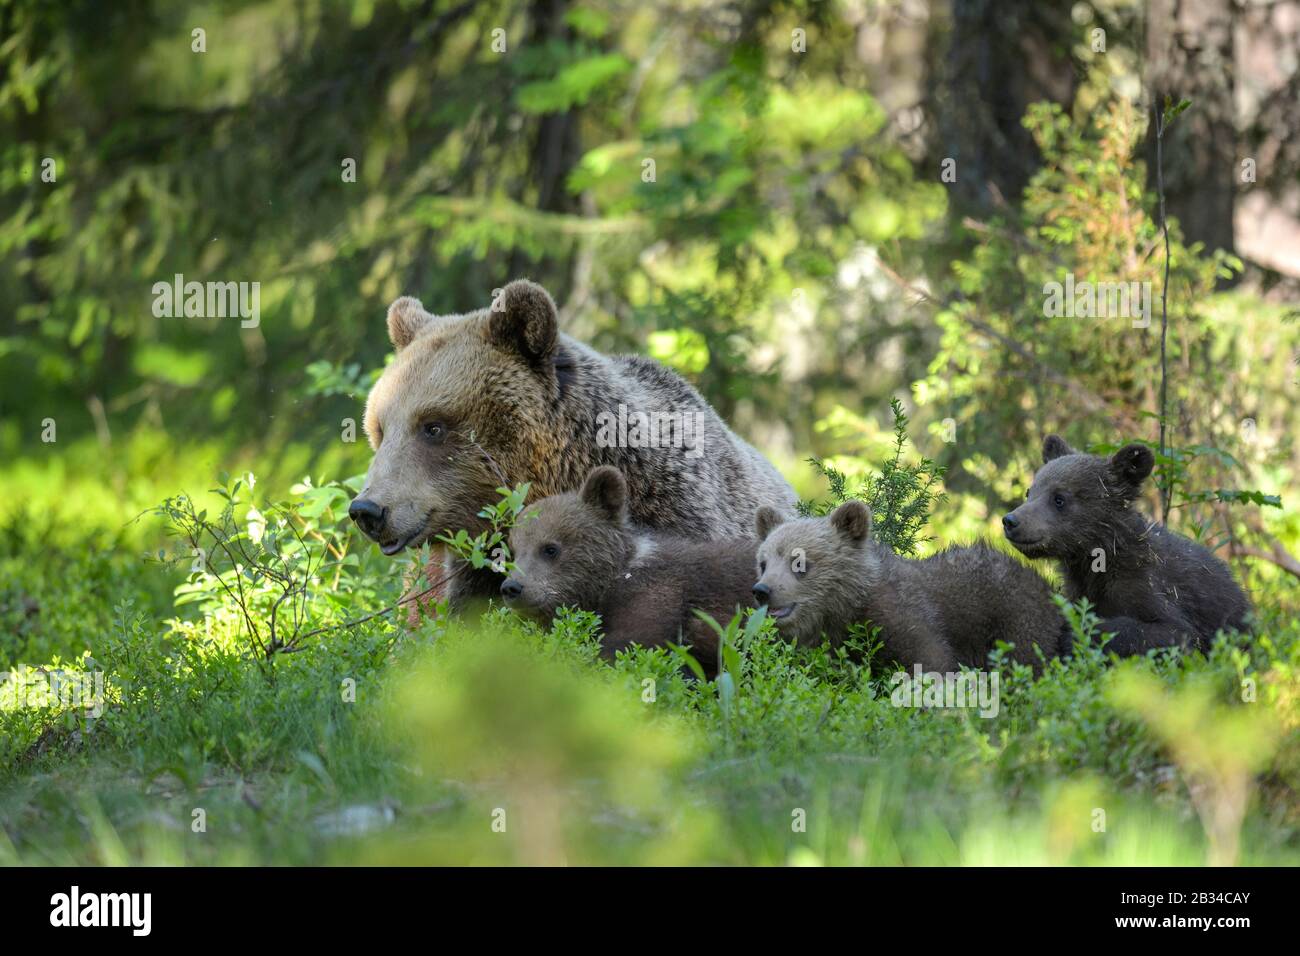 Ours brun européen (Ursus arctos arctos), béaresse avec trois oursons dans un pré dans une forêt, Finlande, Carélia, Suomussalmi Banque D'Images